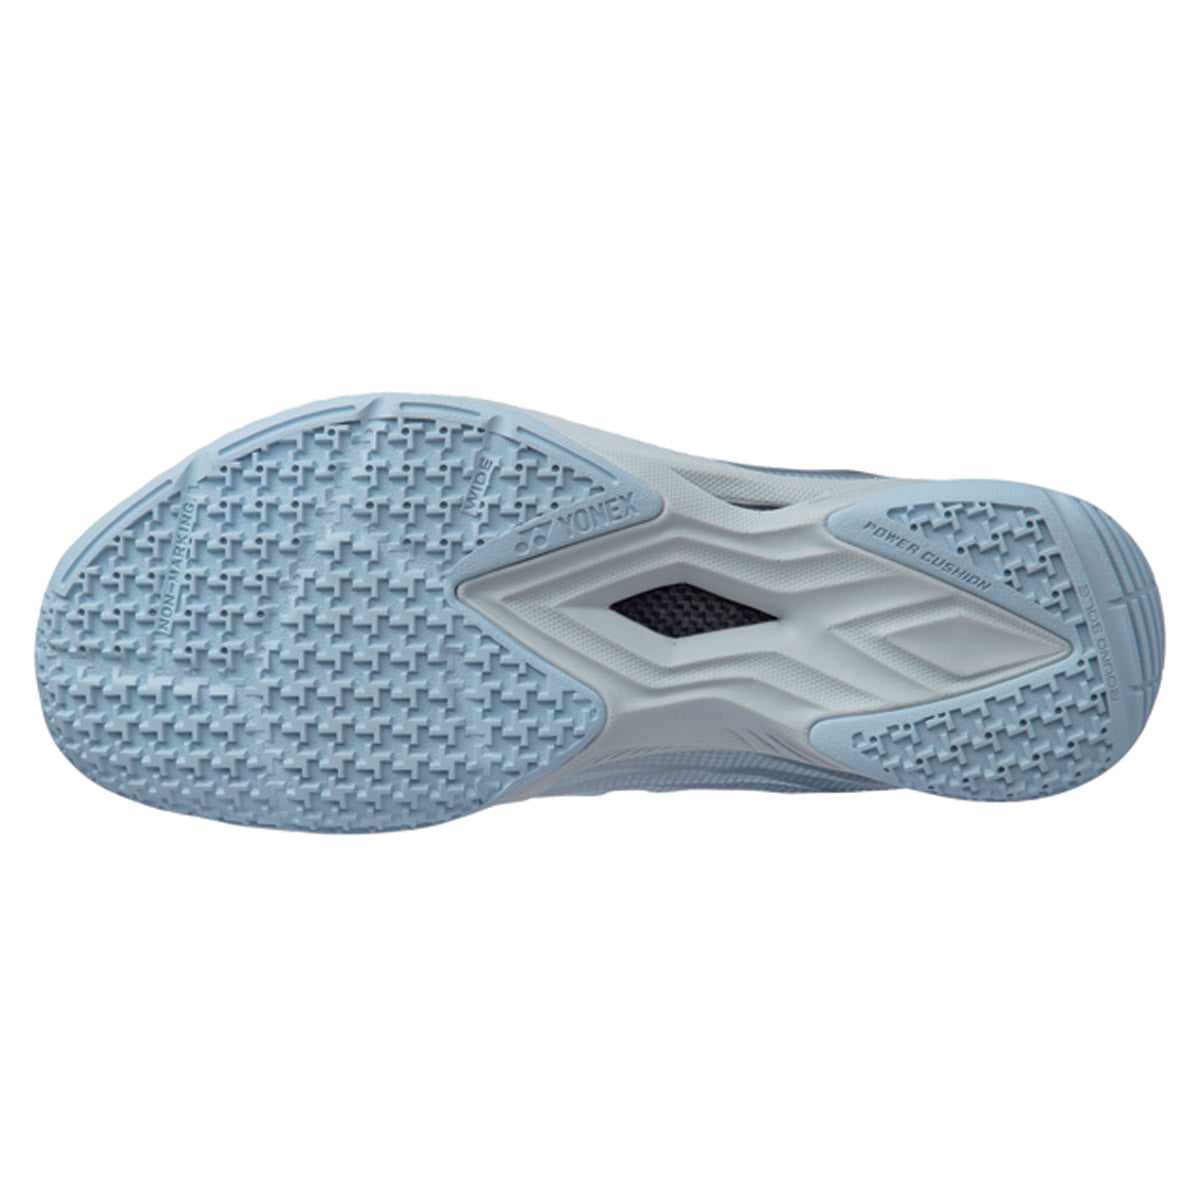 Yonex Mens Aerus Z2 Wide Badminton Shoes - Light Blue